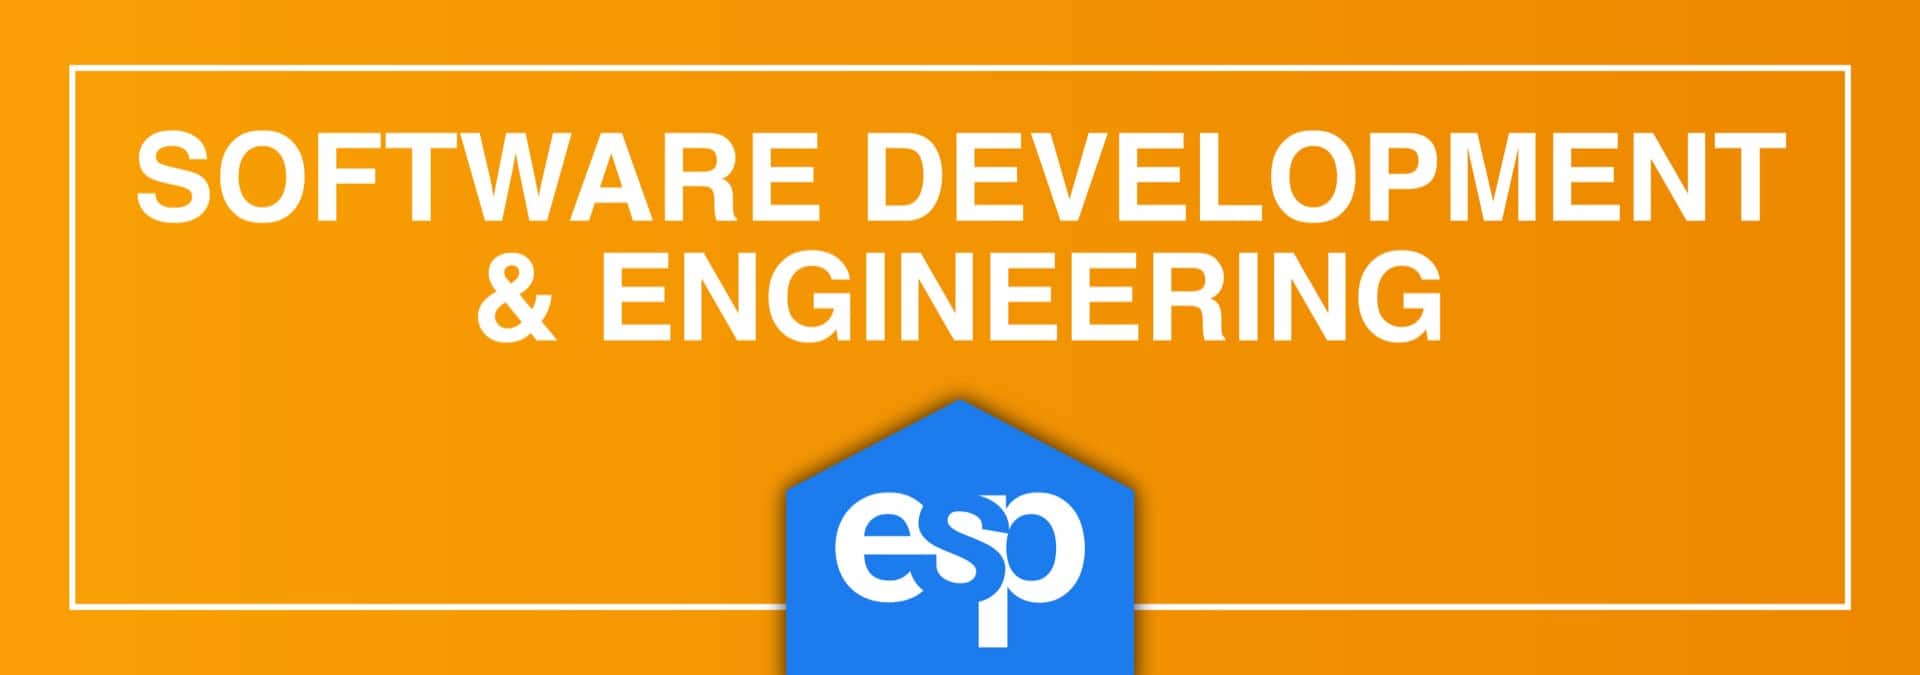 ESP Software Development & Engineering ESP Careers Website Banner